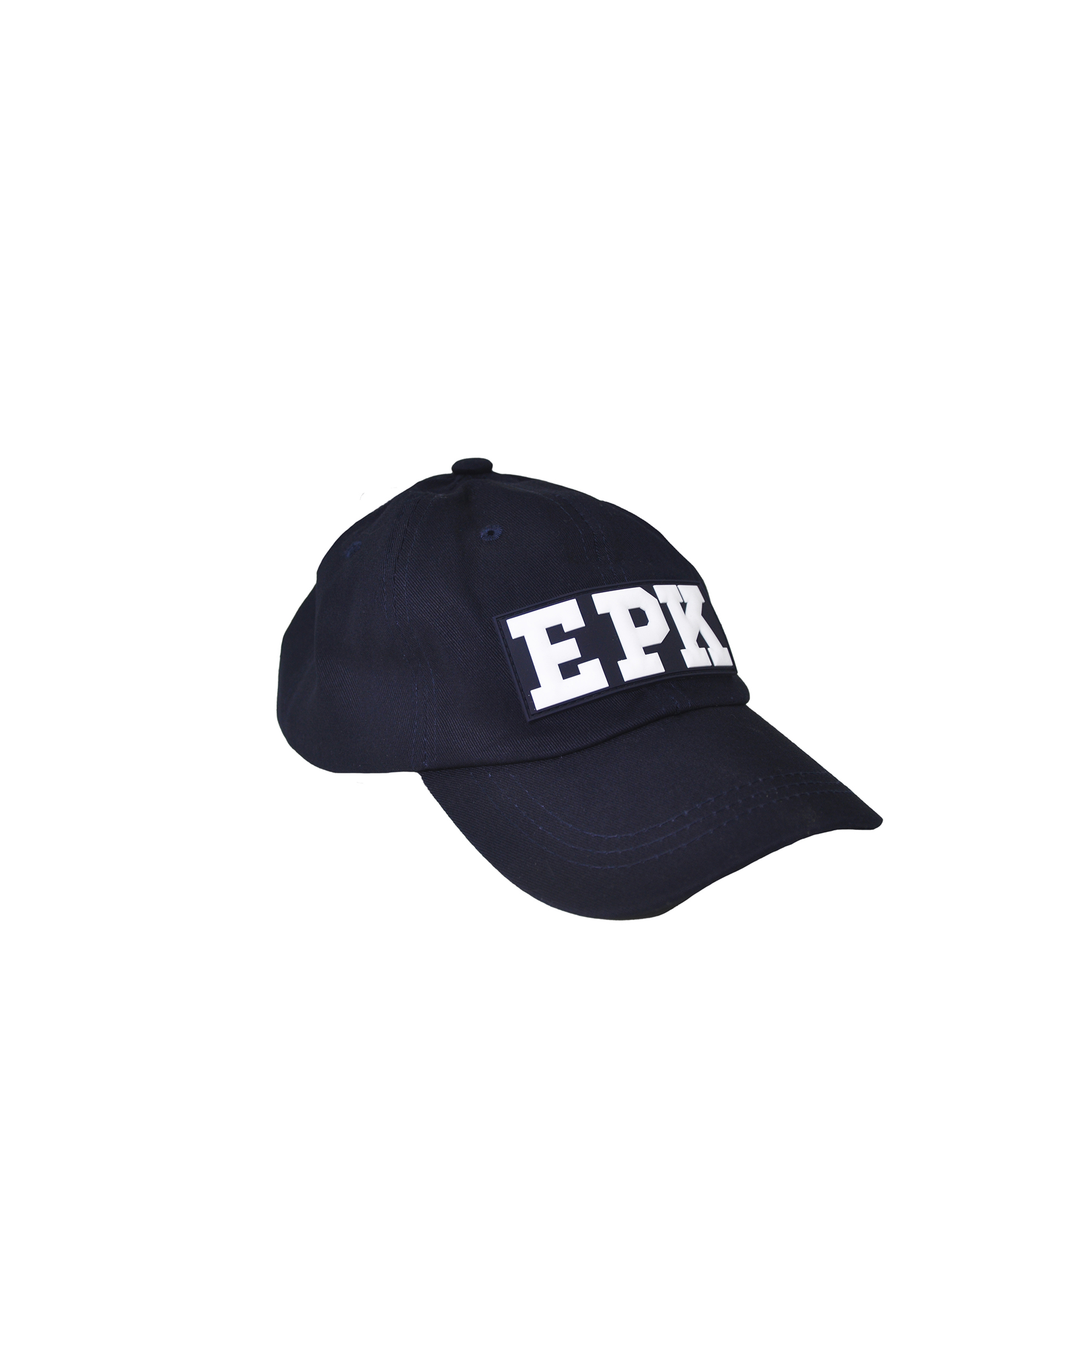 Gorra azul marina con EPK en blanco